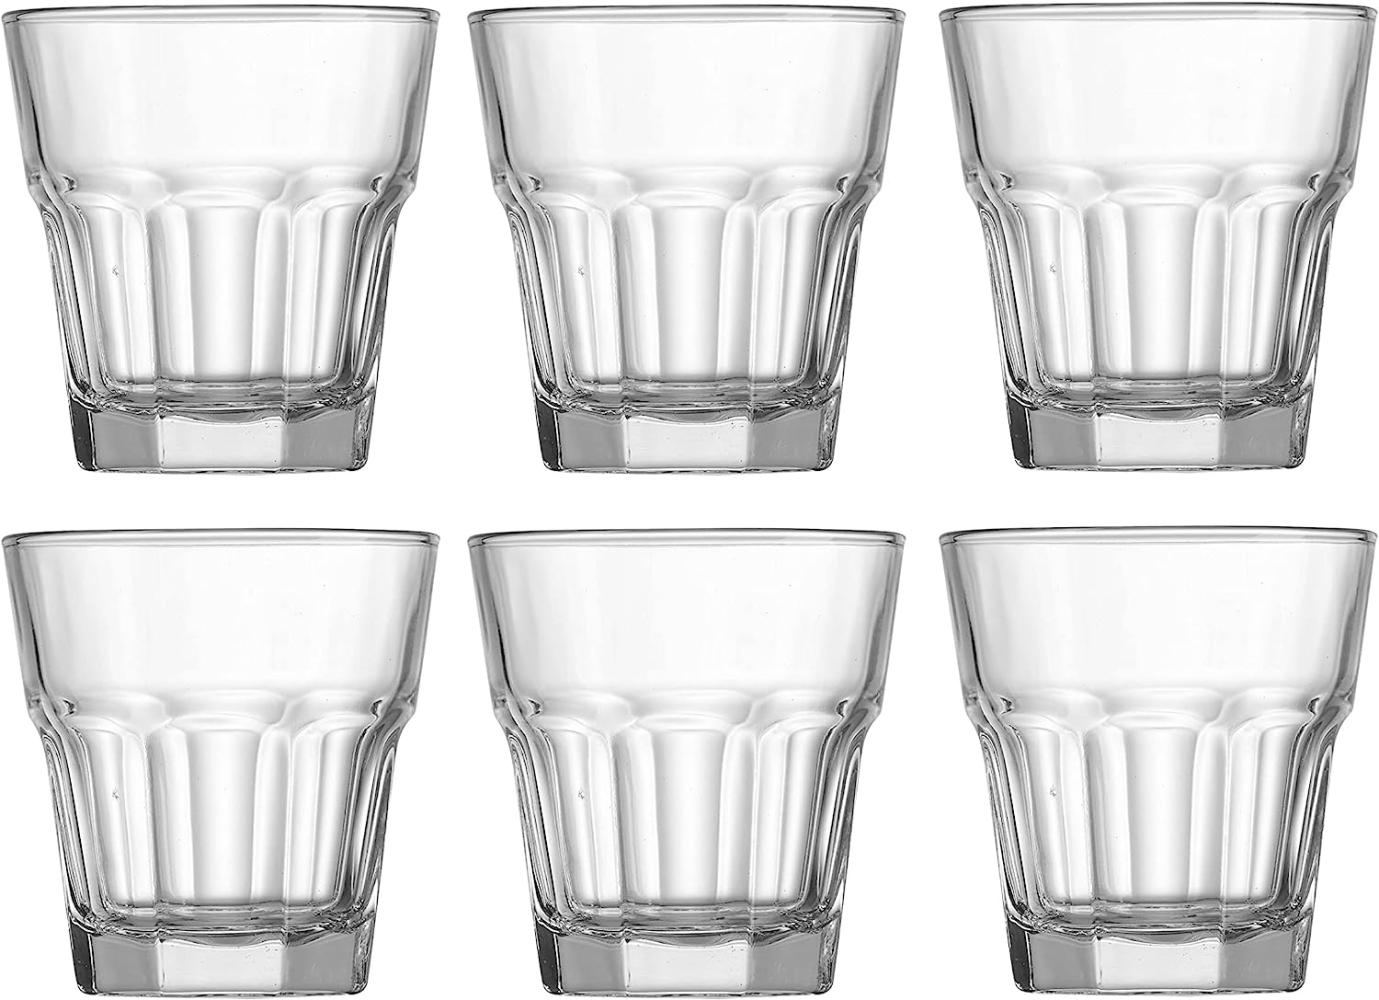 Ritzenhoff & Breker Whiskyglas Riad, Schnapsglas, Becher, Glas, Klar, 230 ml, 812367 Bild 1